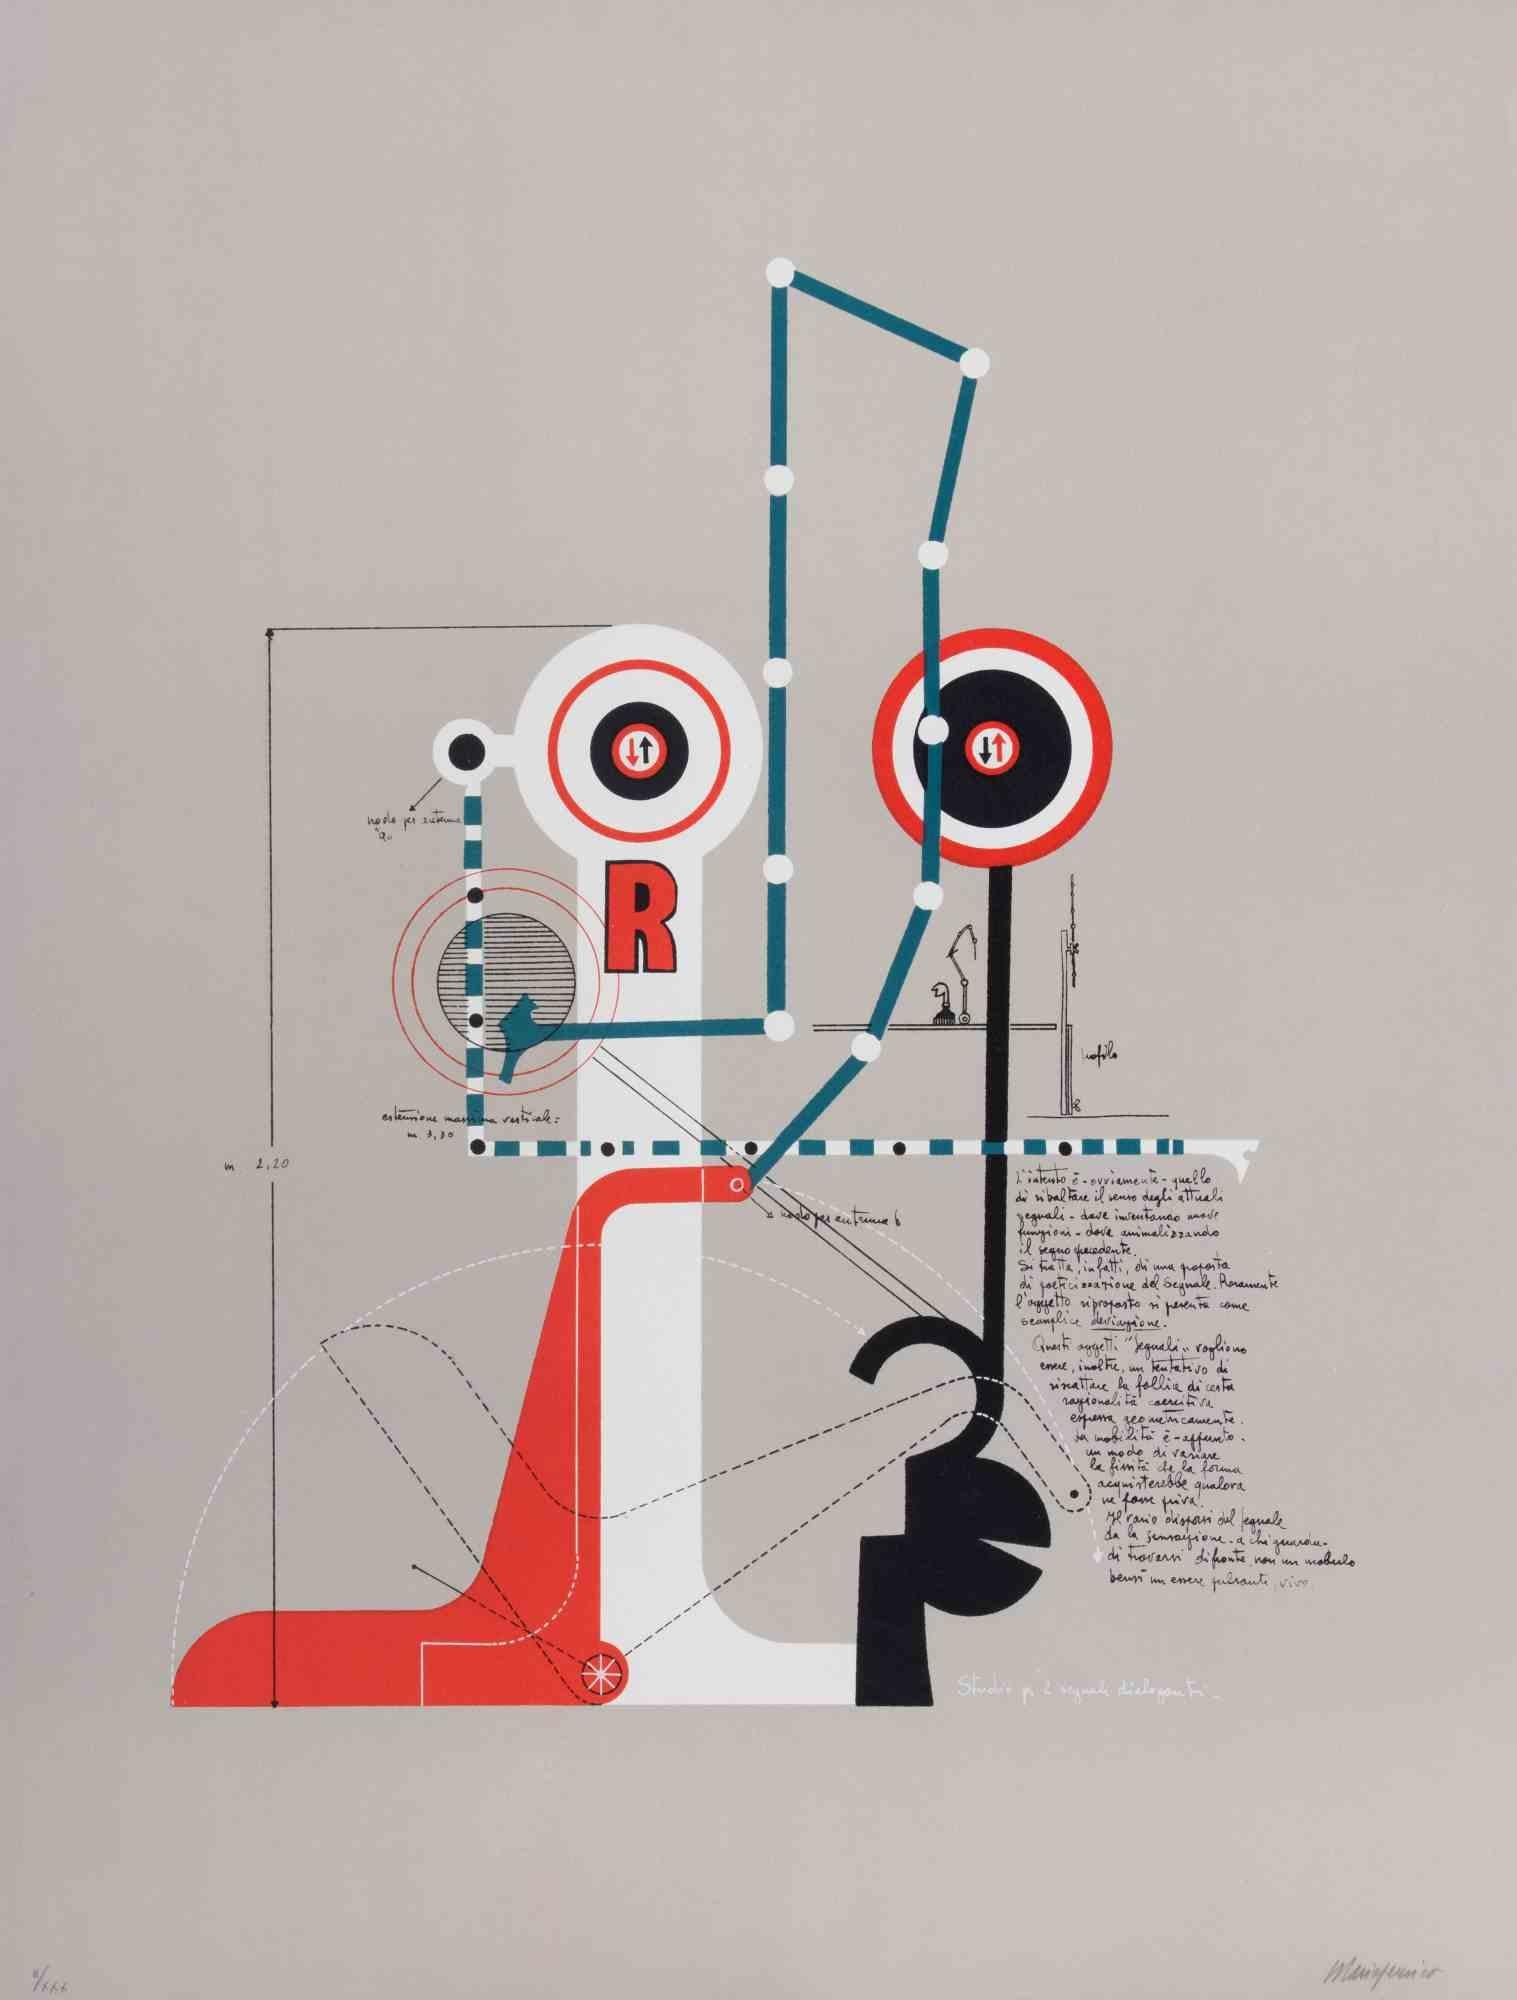 Étude pour deux signaux communicants est une œuvre d'art contemporain réalisée par Mario Persico dans les années 1970. 

Lithographie en couleurs mélangées. 

Titre dans la marge inférieure.

Signé à la main par l'artiste. 

Numéroté dans la marge